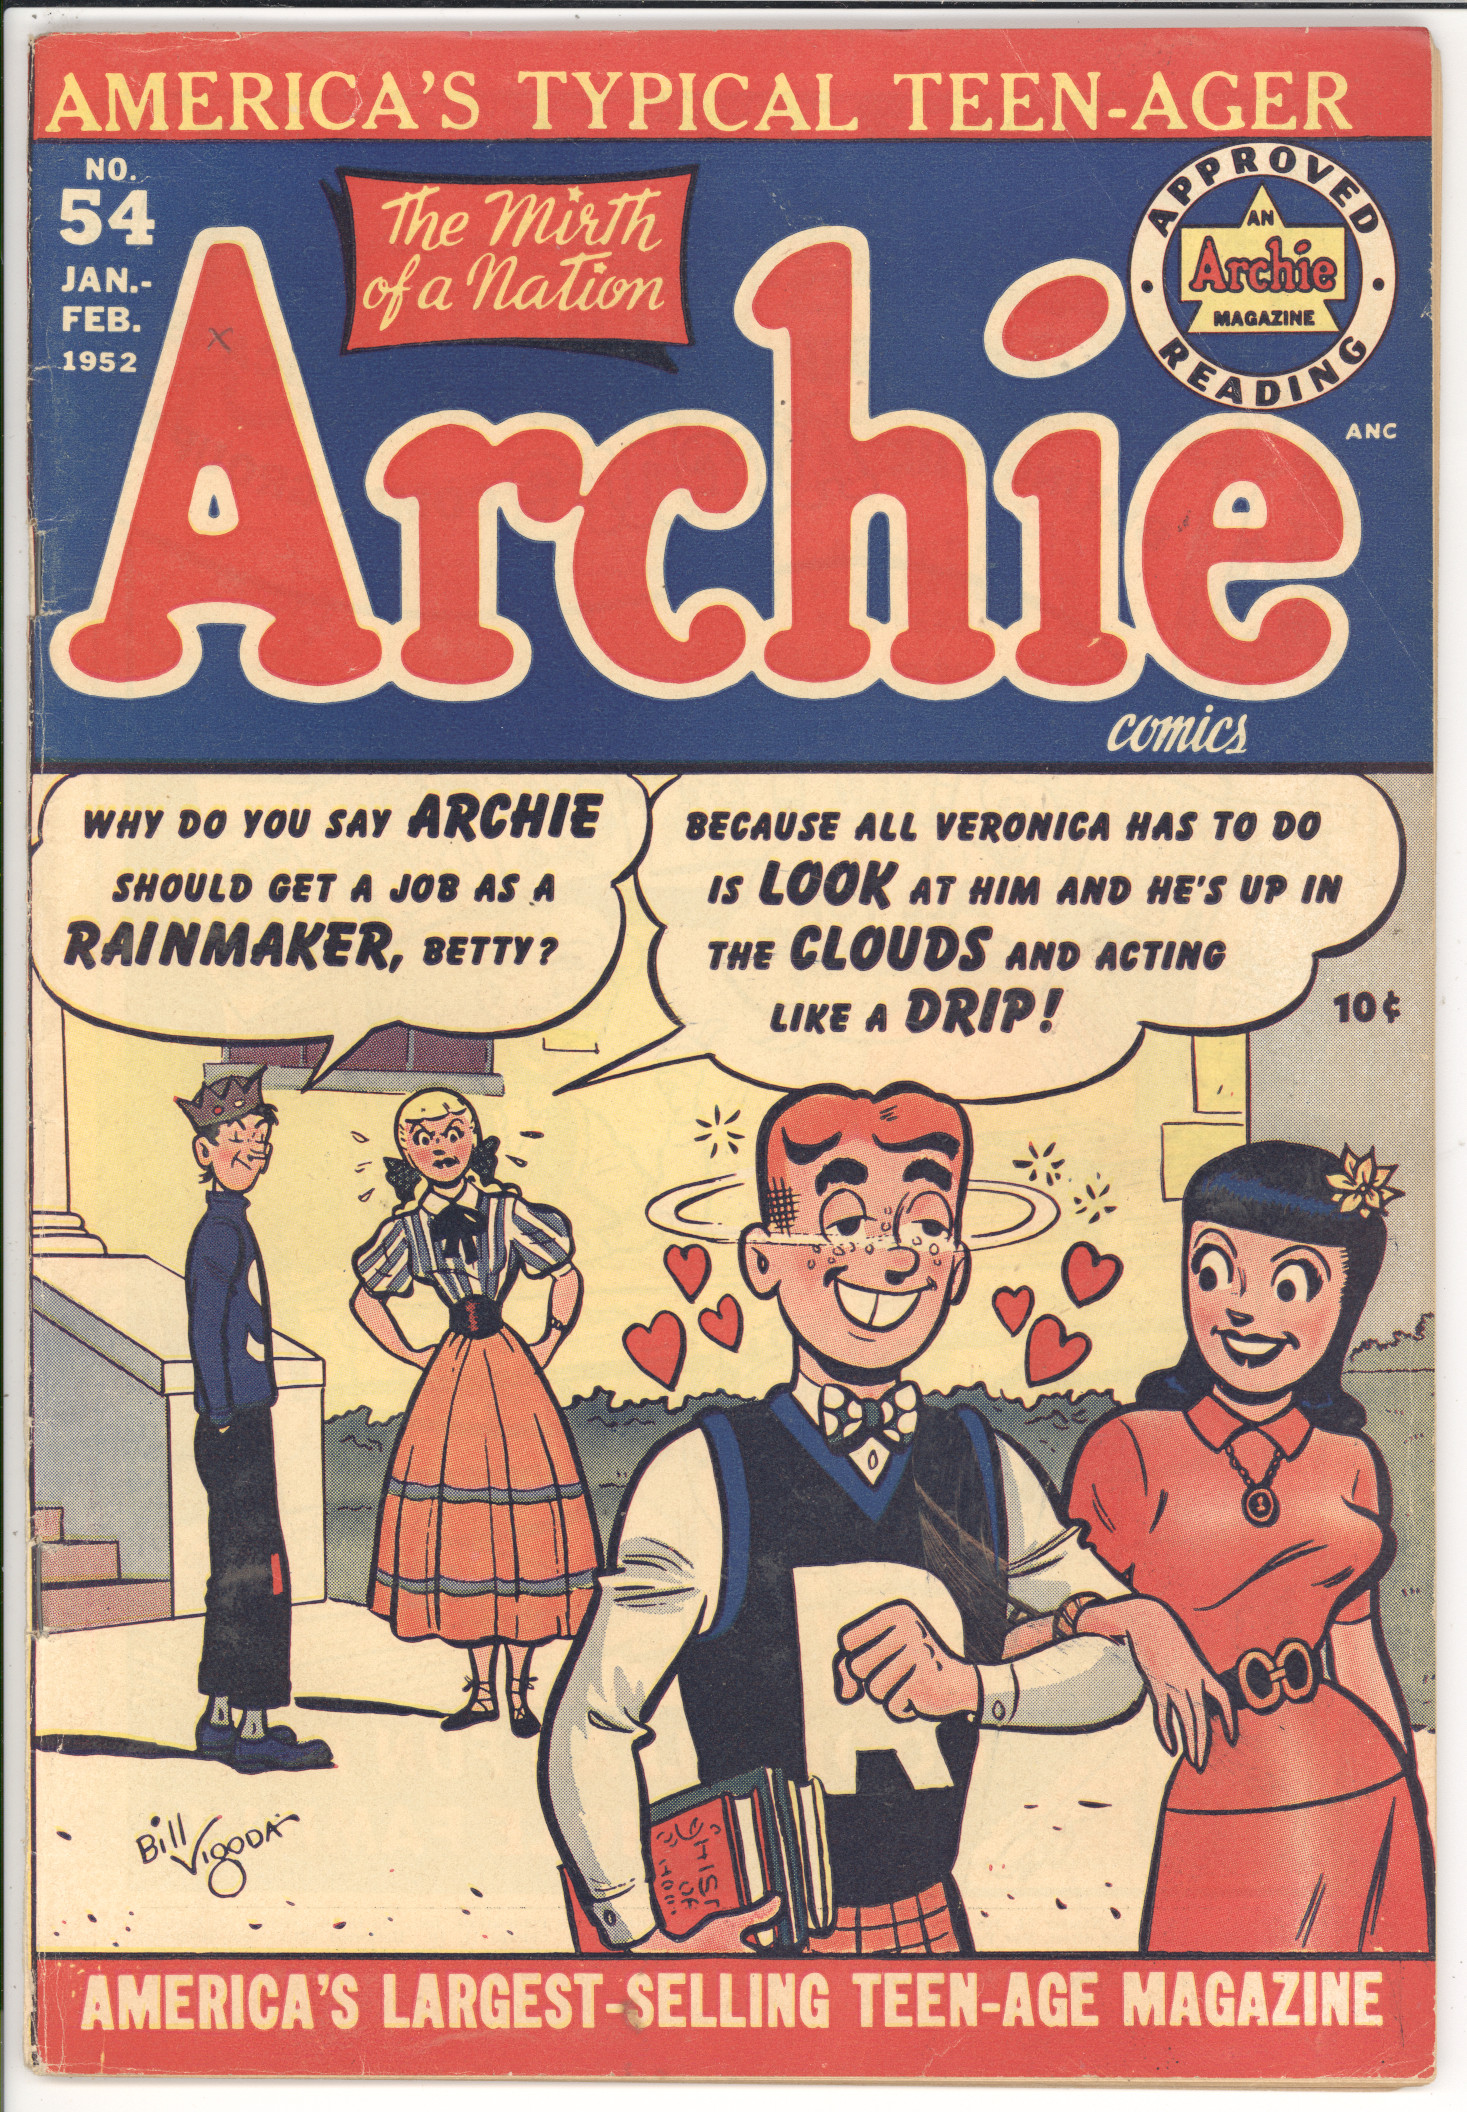 Archie Comics #54 front